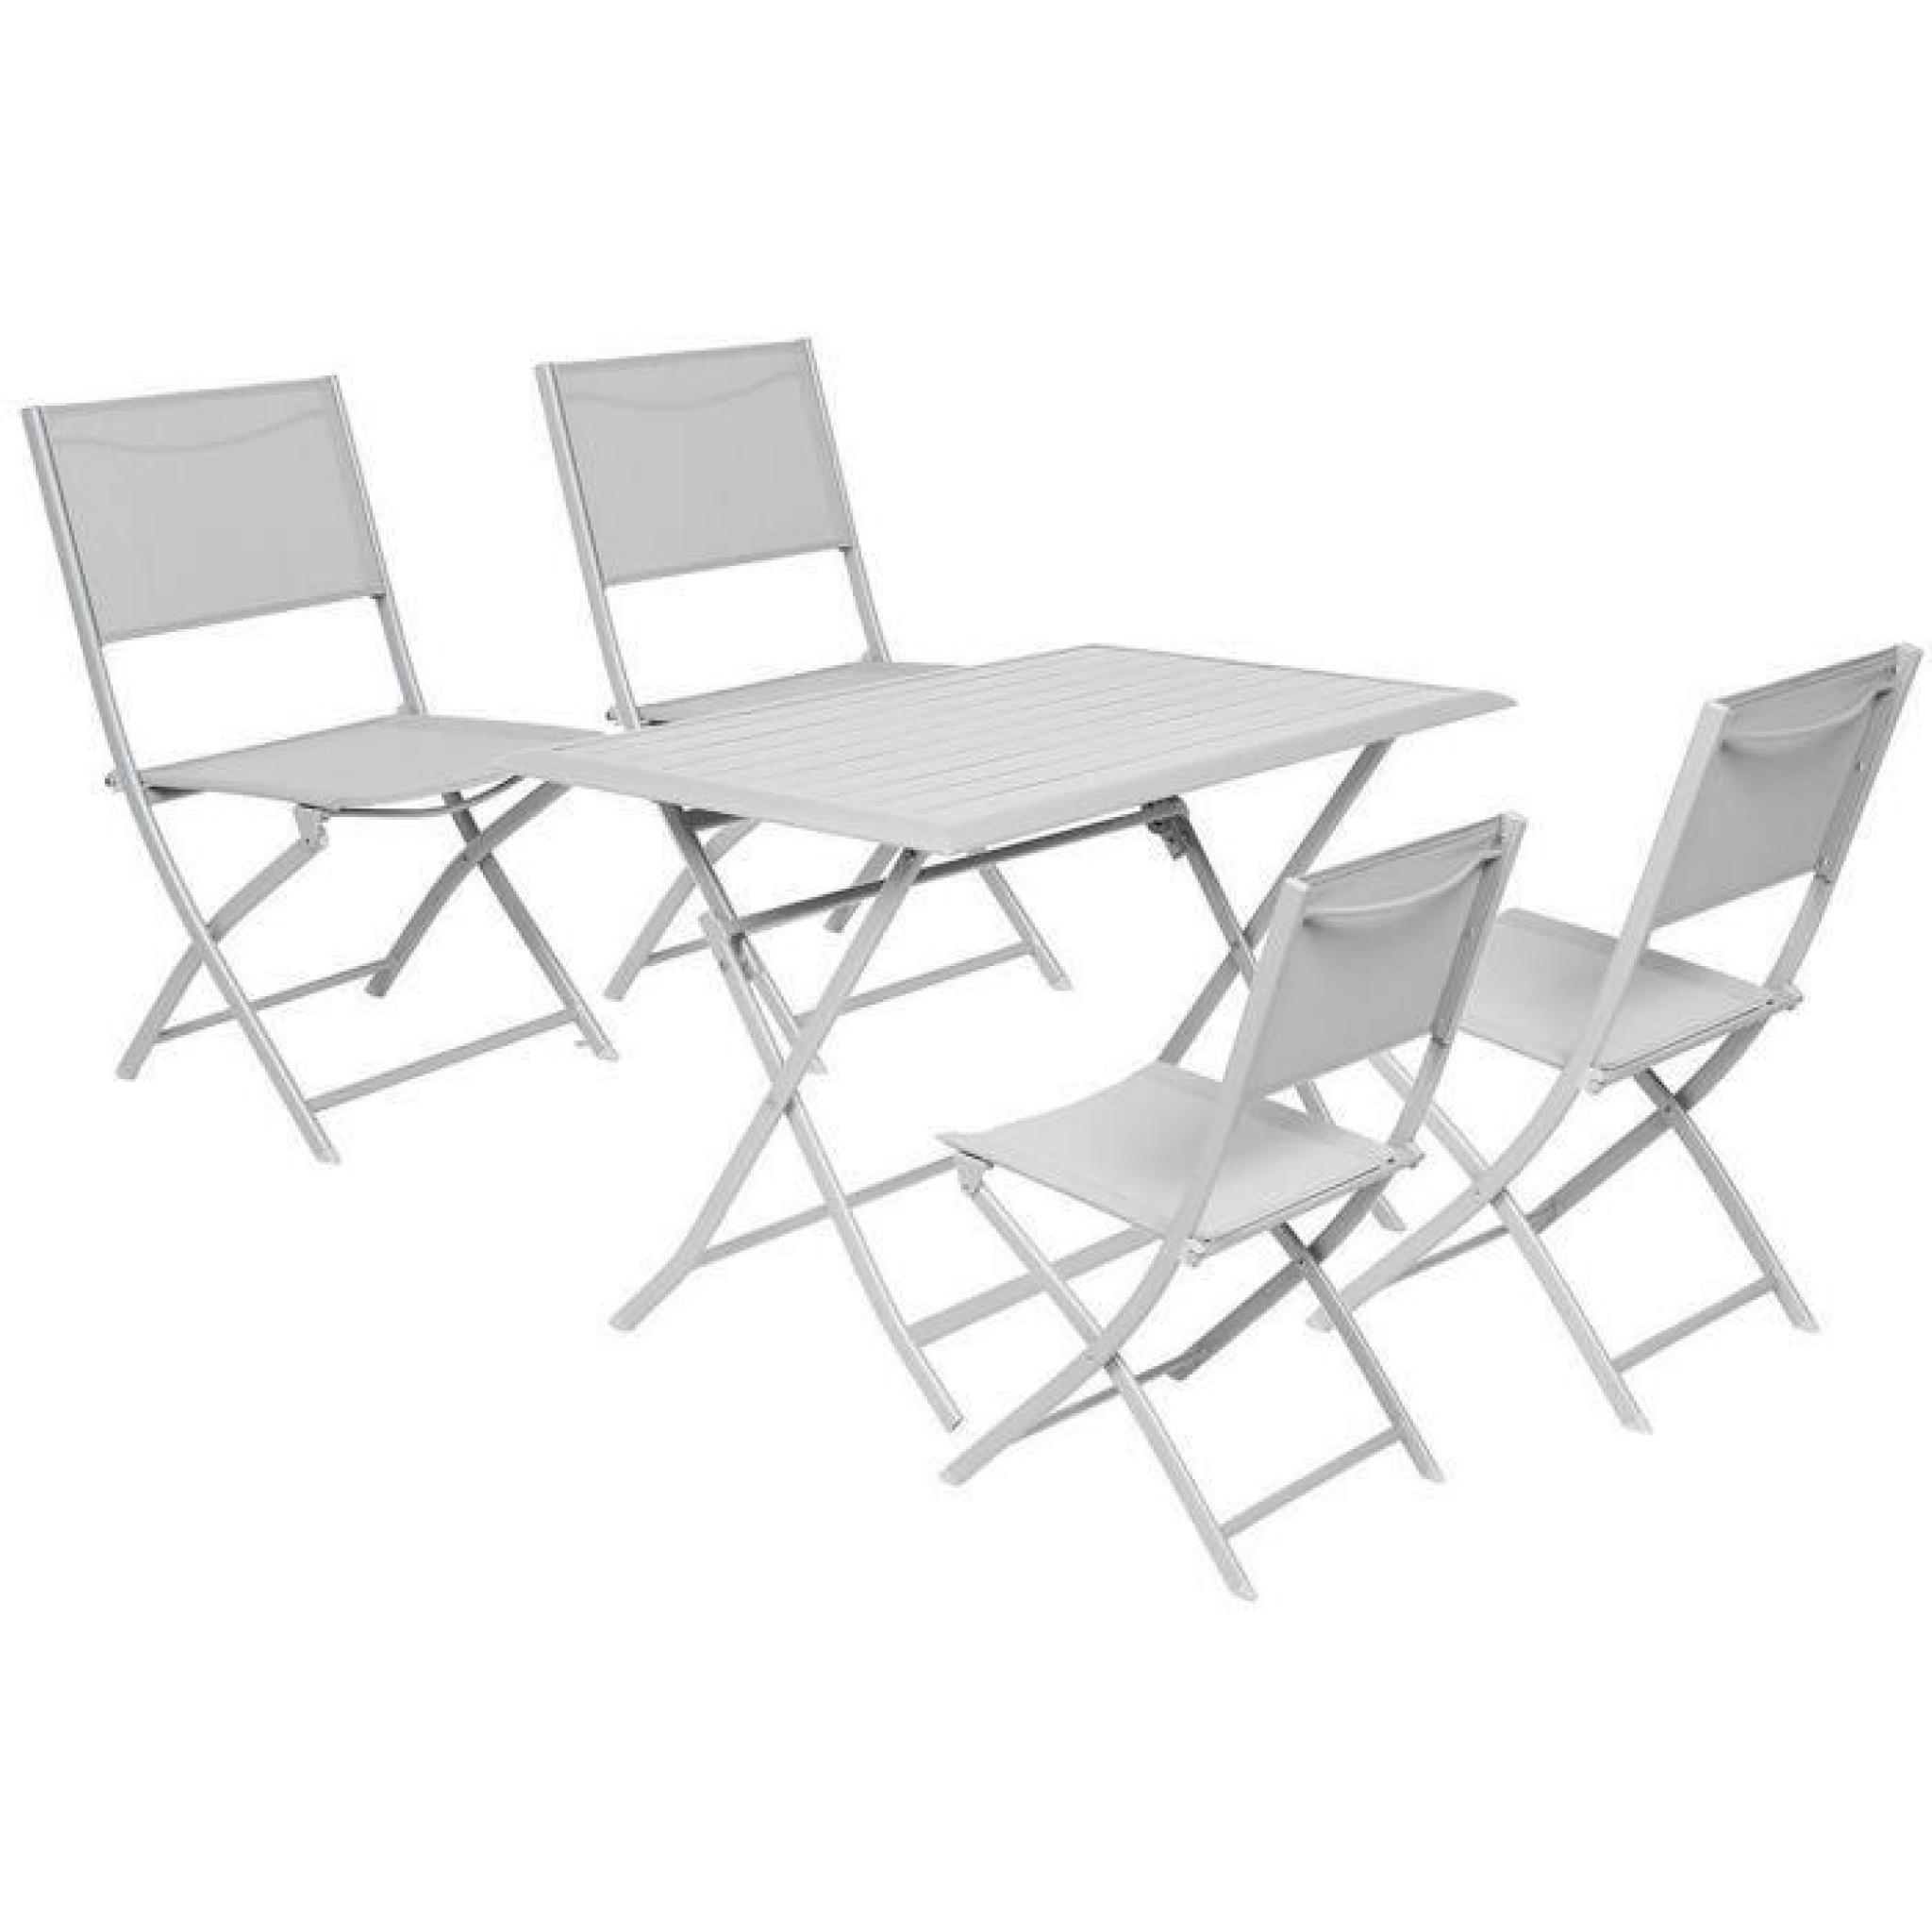 Table pliante rectangulaire en Aluminium coloris silver mat - Dim : L 150 x P 80 x H 71 cm  pas cher